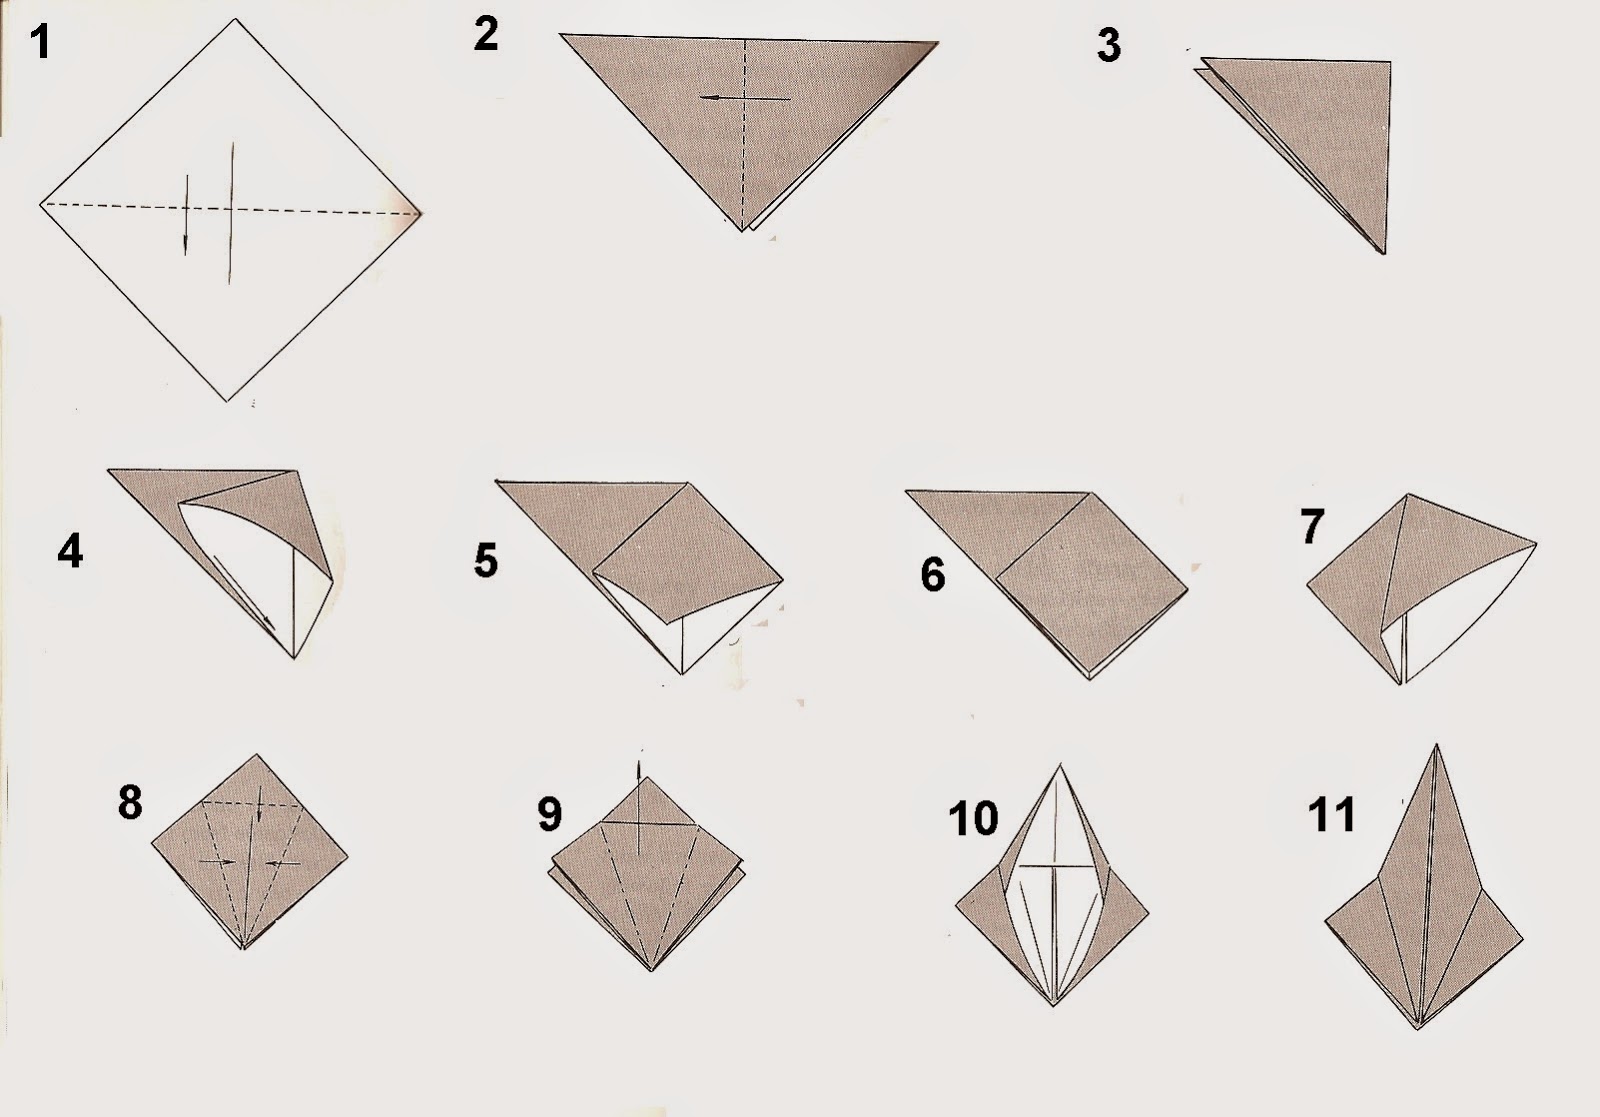  Cara  Membuat  Naga Dari Kertas  Origami  IBoxe